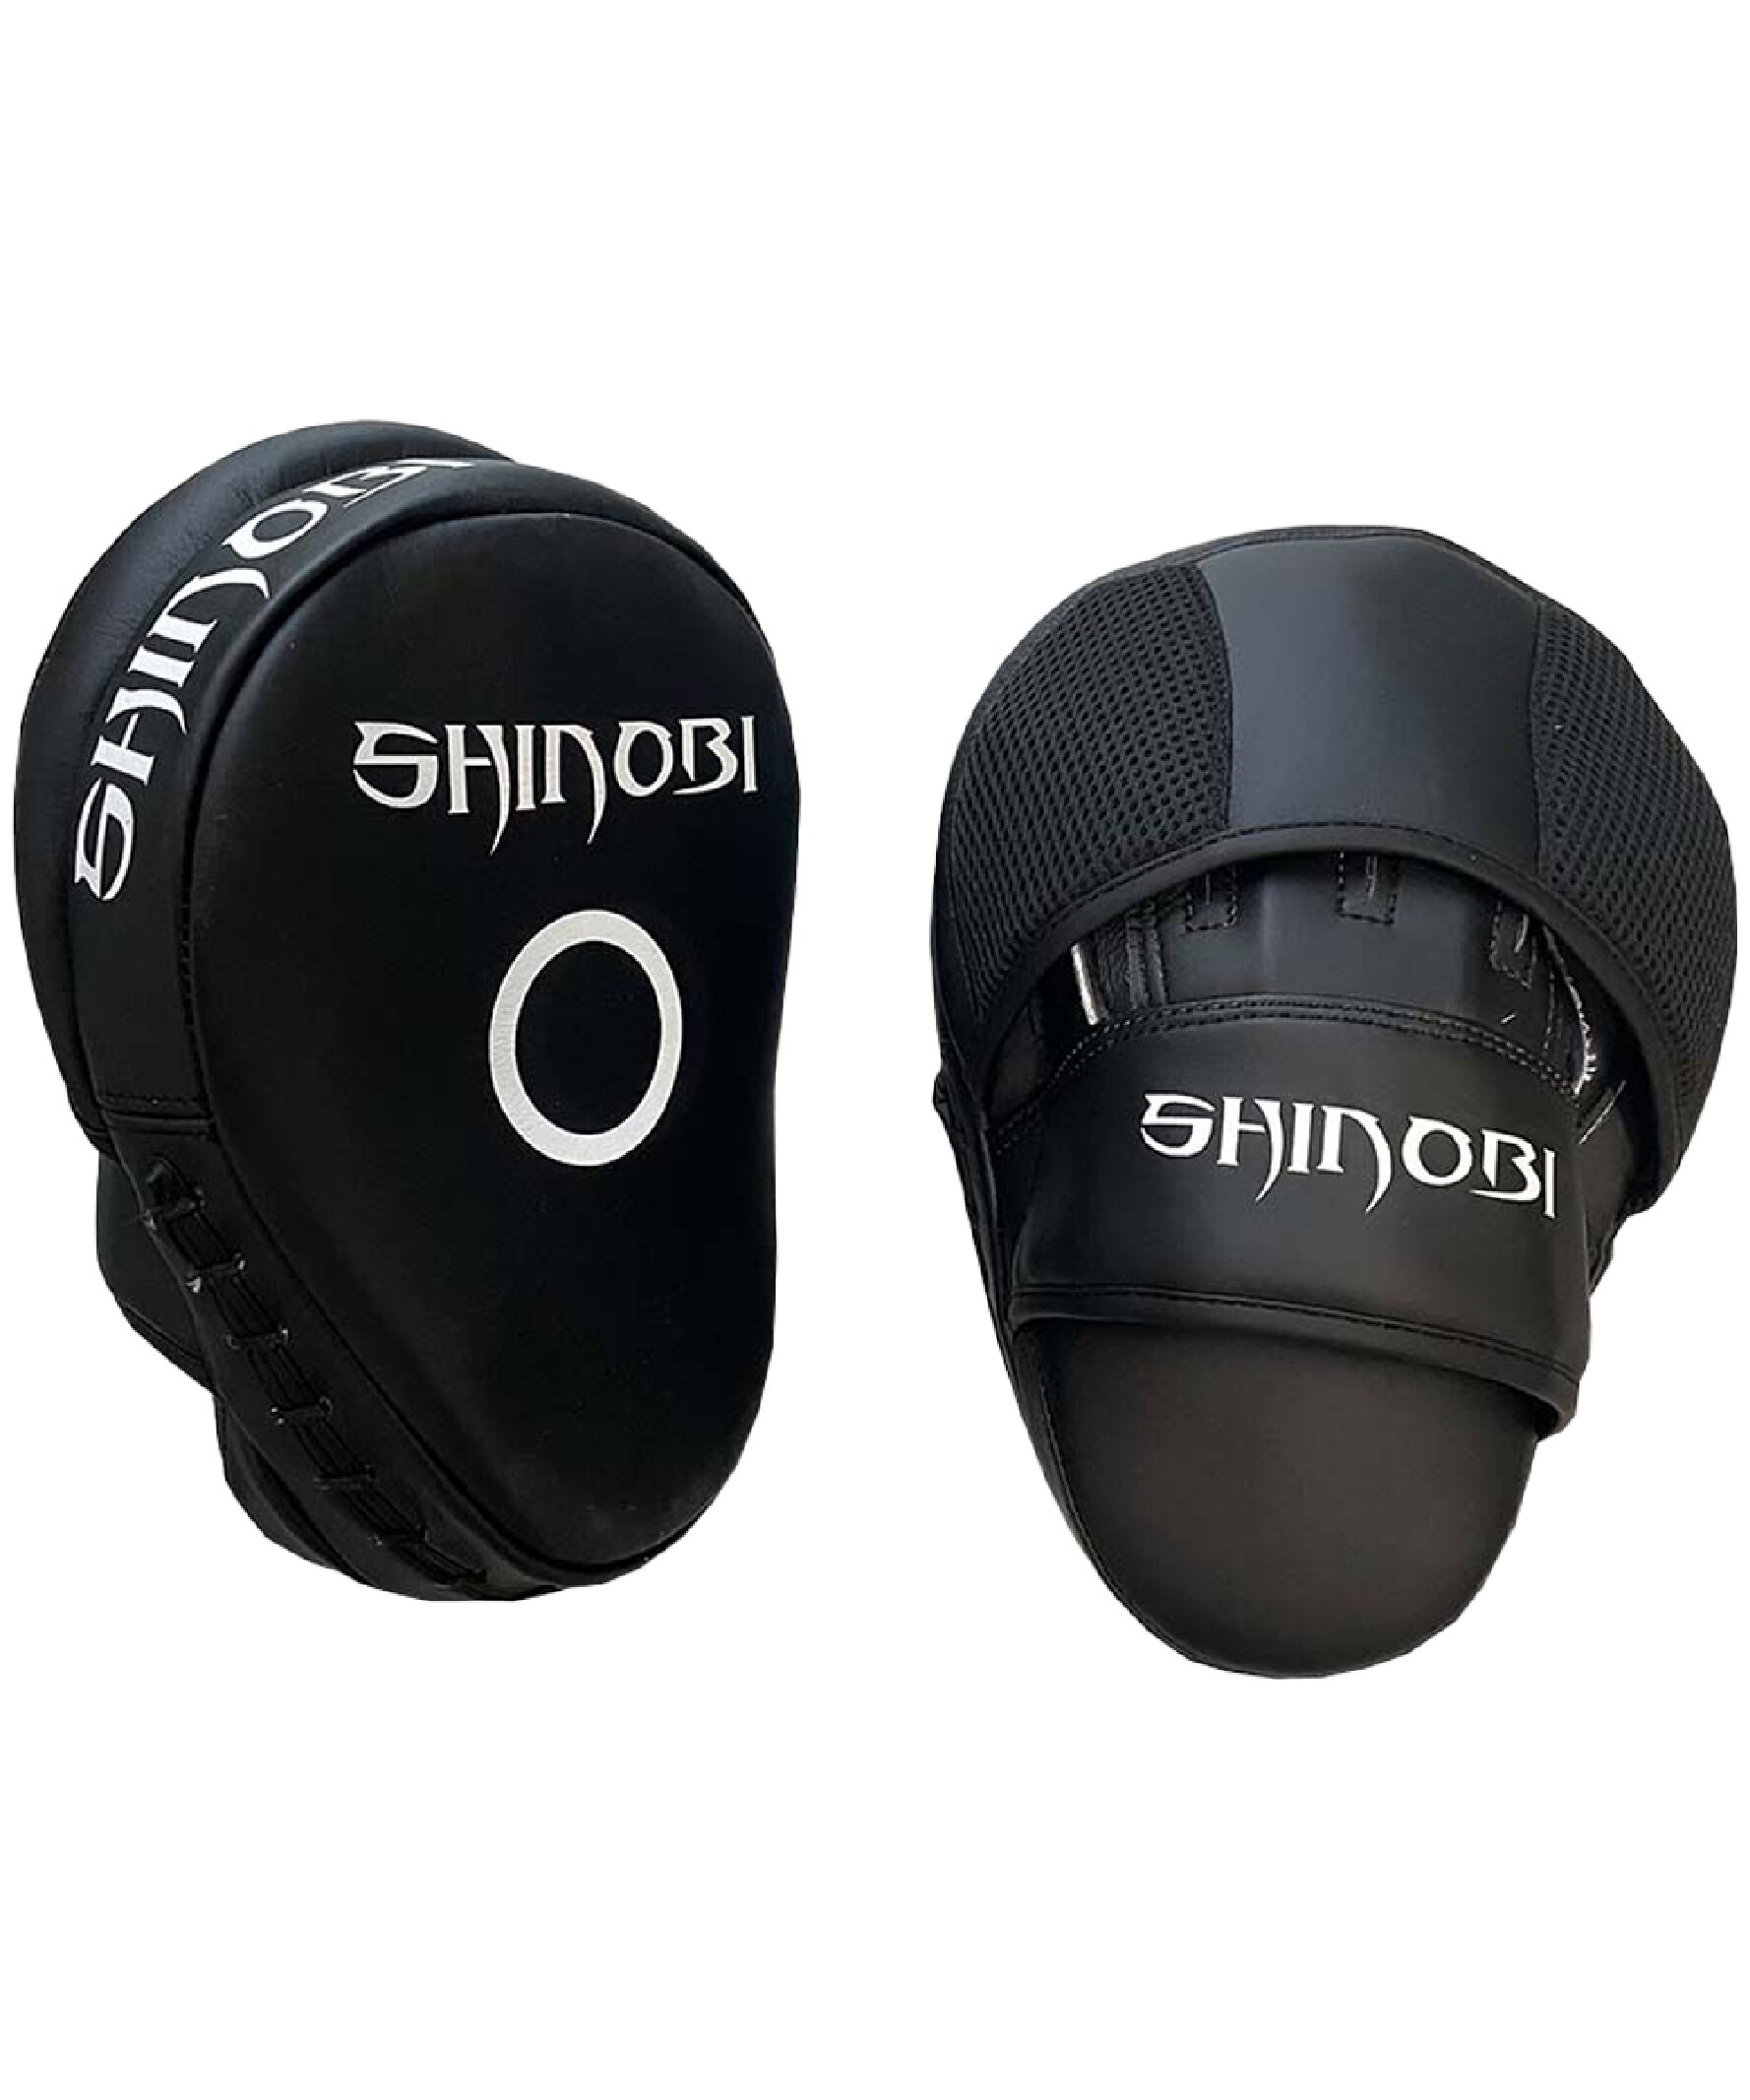 Shinobi Ronin Pads Black 2 1 Pdf